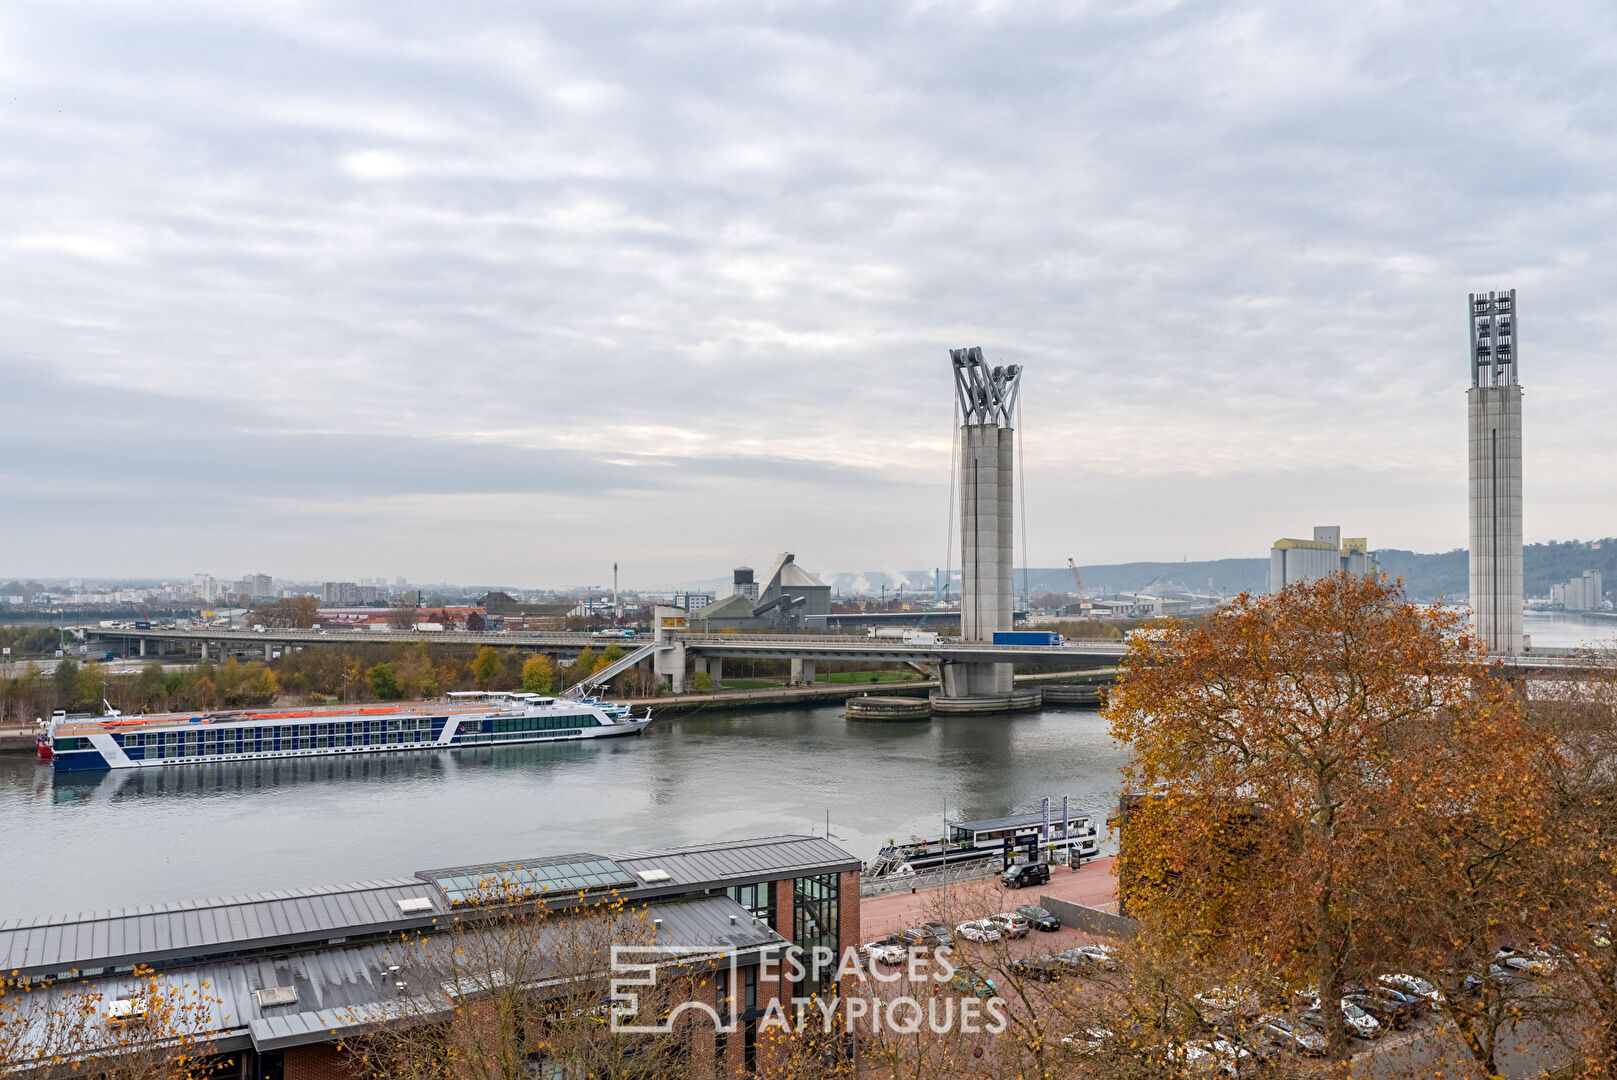 Appartement contemporain avec vue panoramique sur la Seine